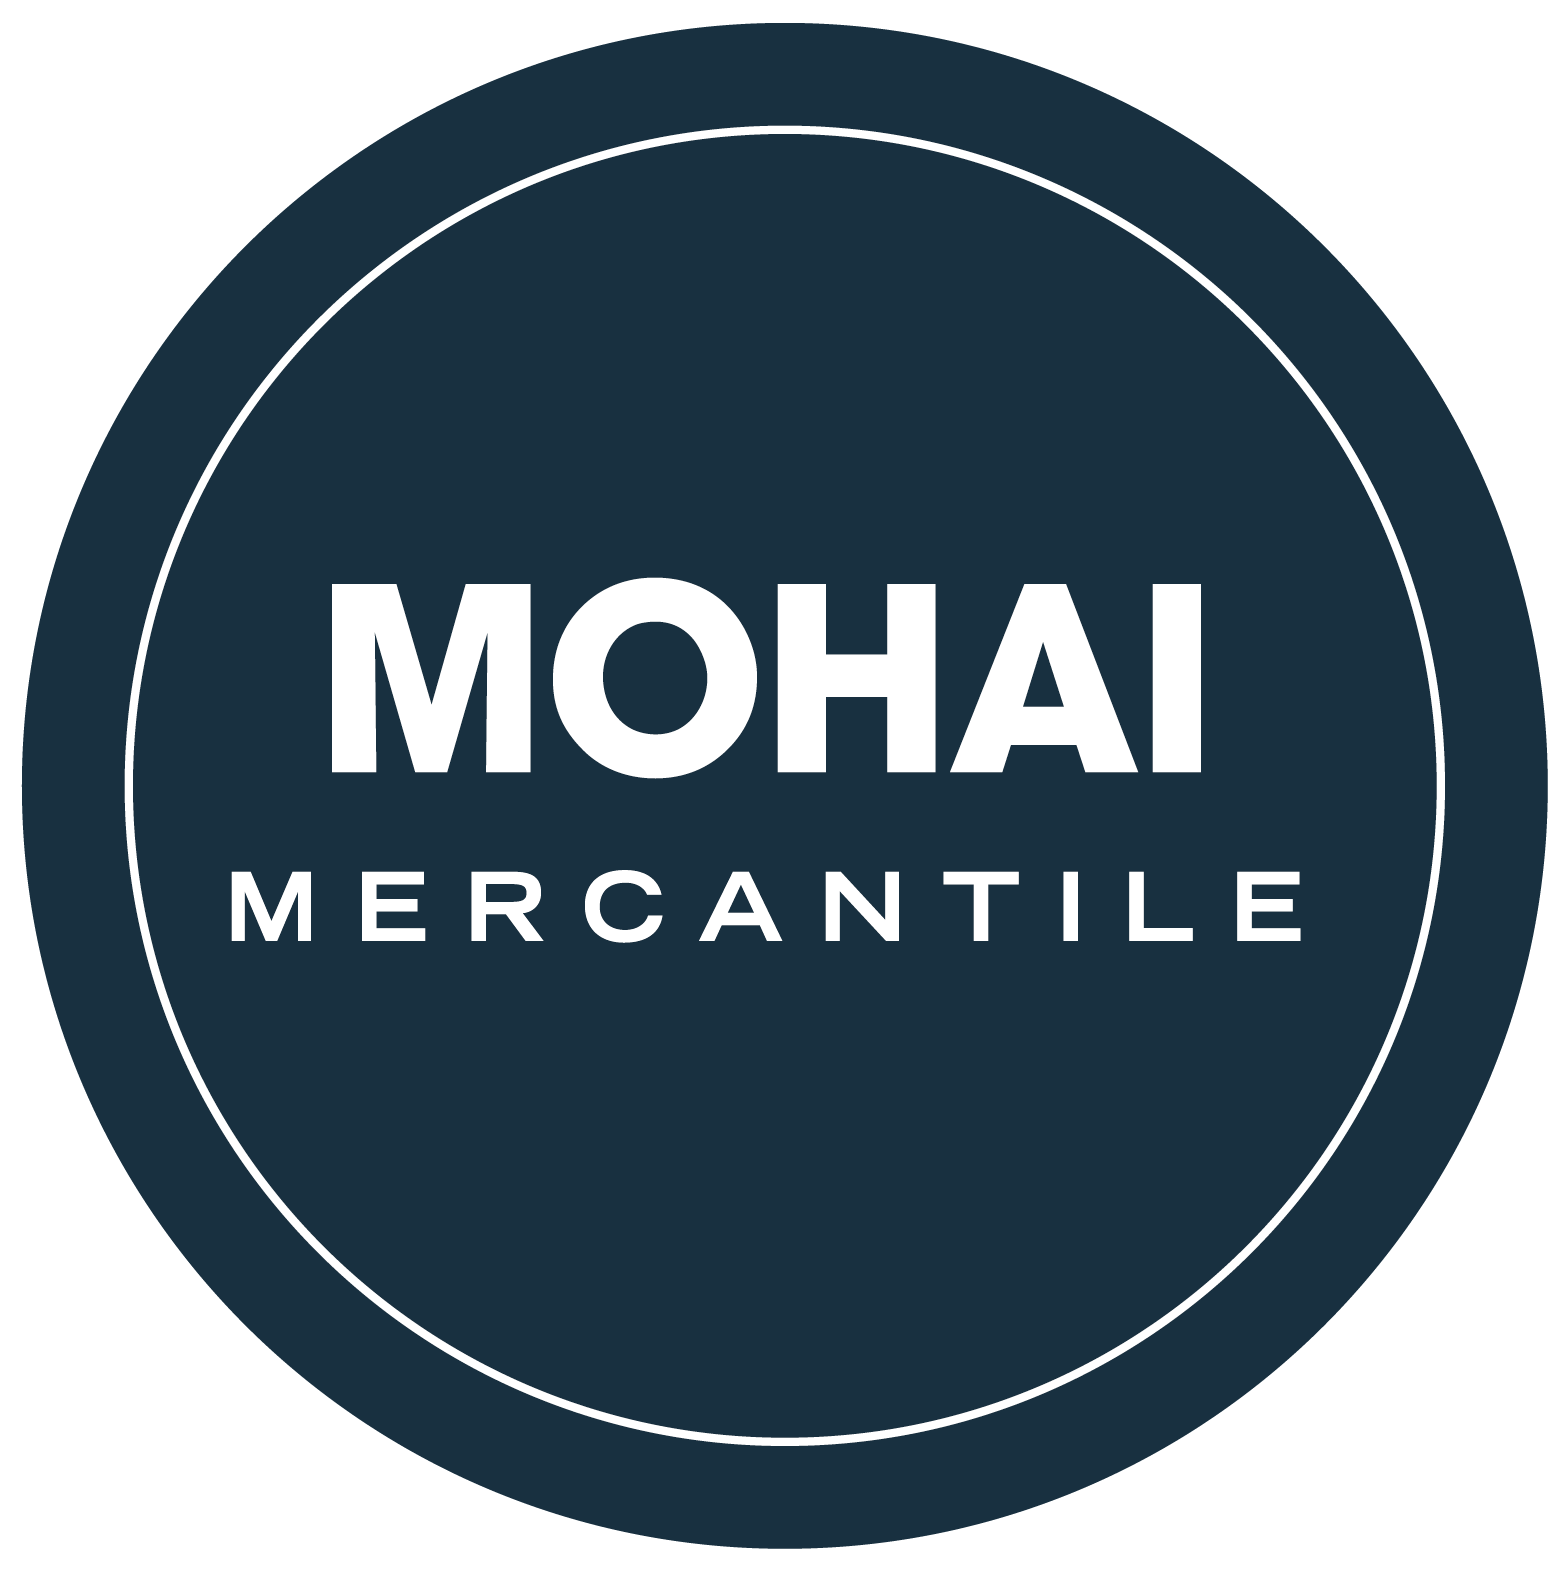 The MOHAI Mercantile — MOHAI